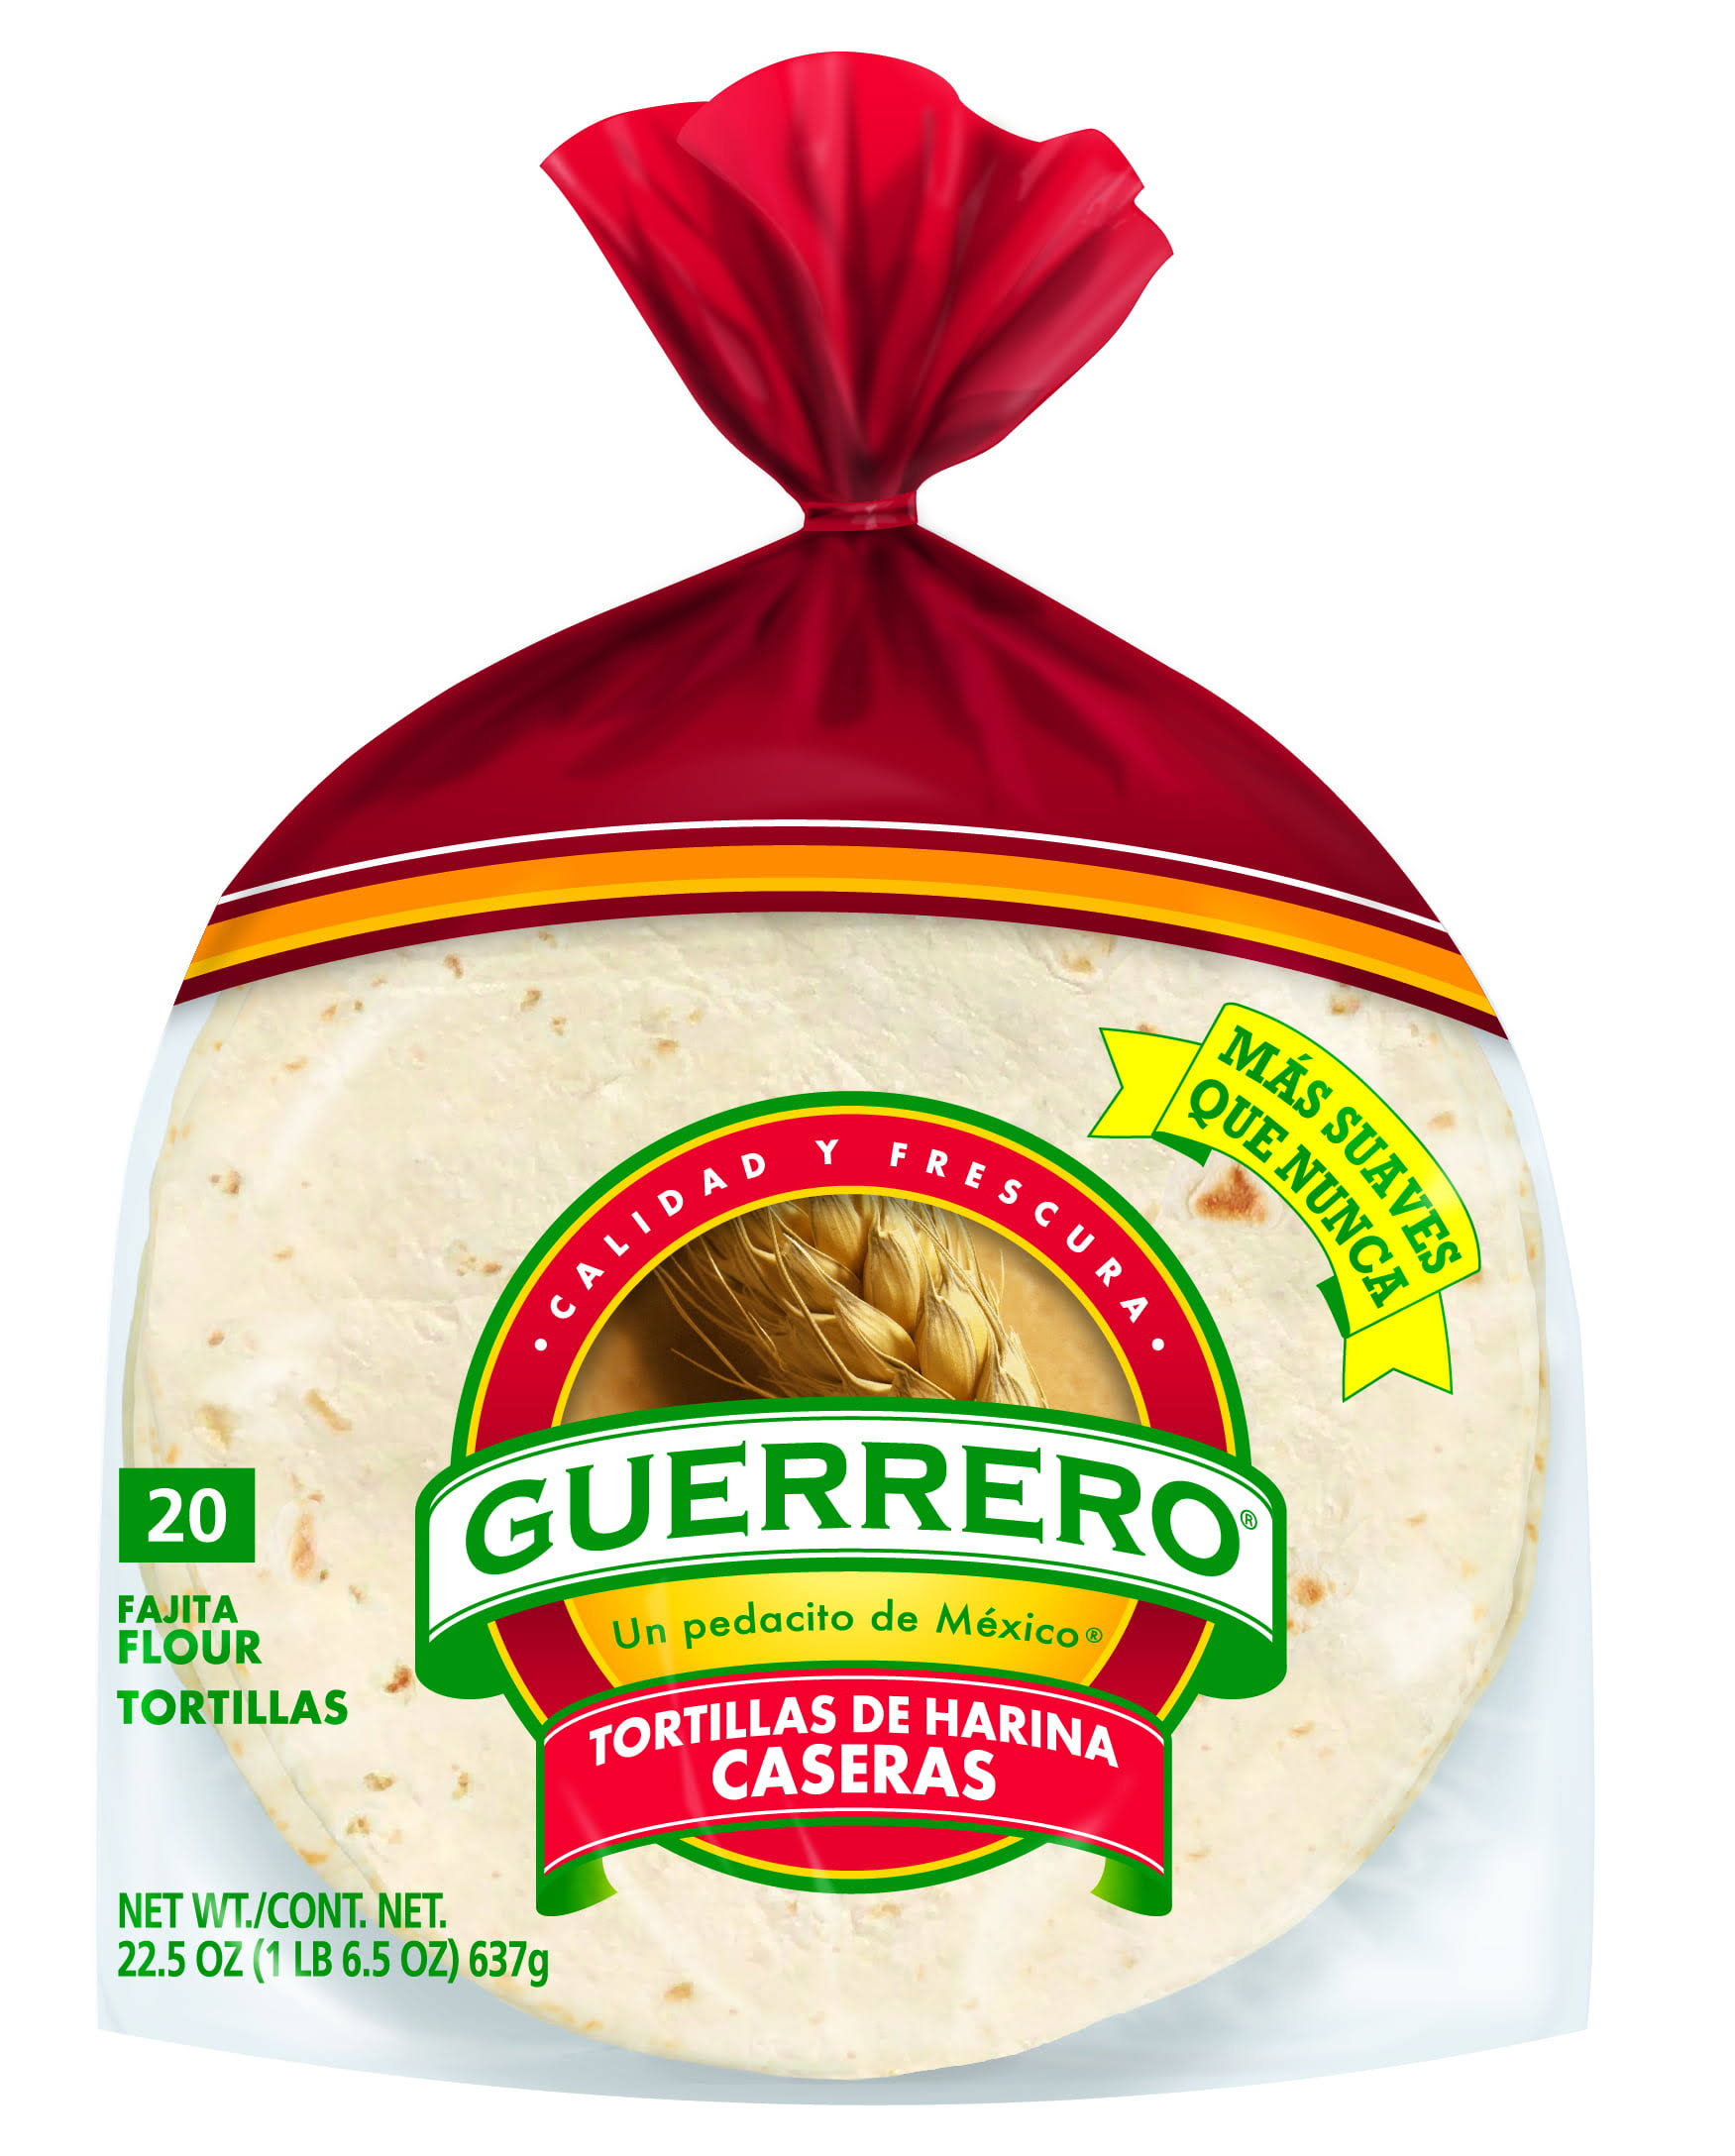 Guerrero Flour Caseras Tortillas - 20ct